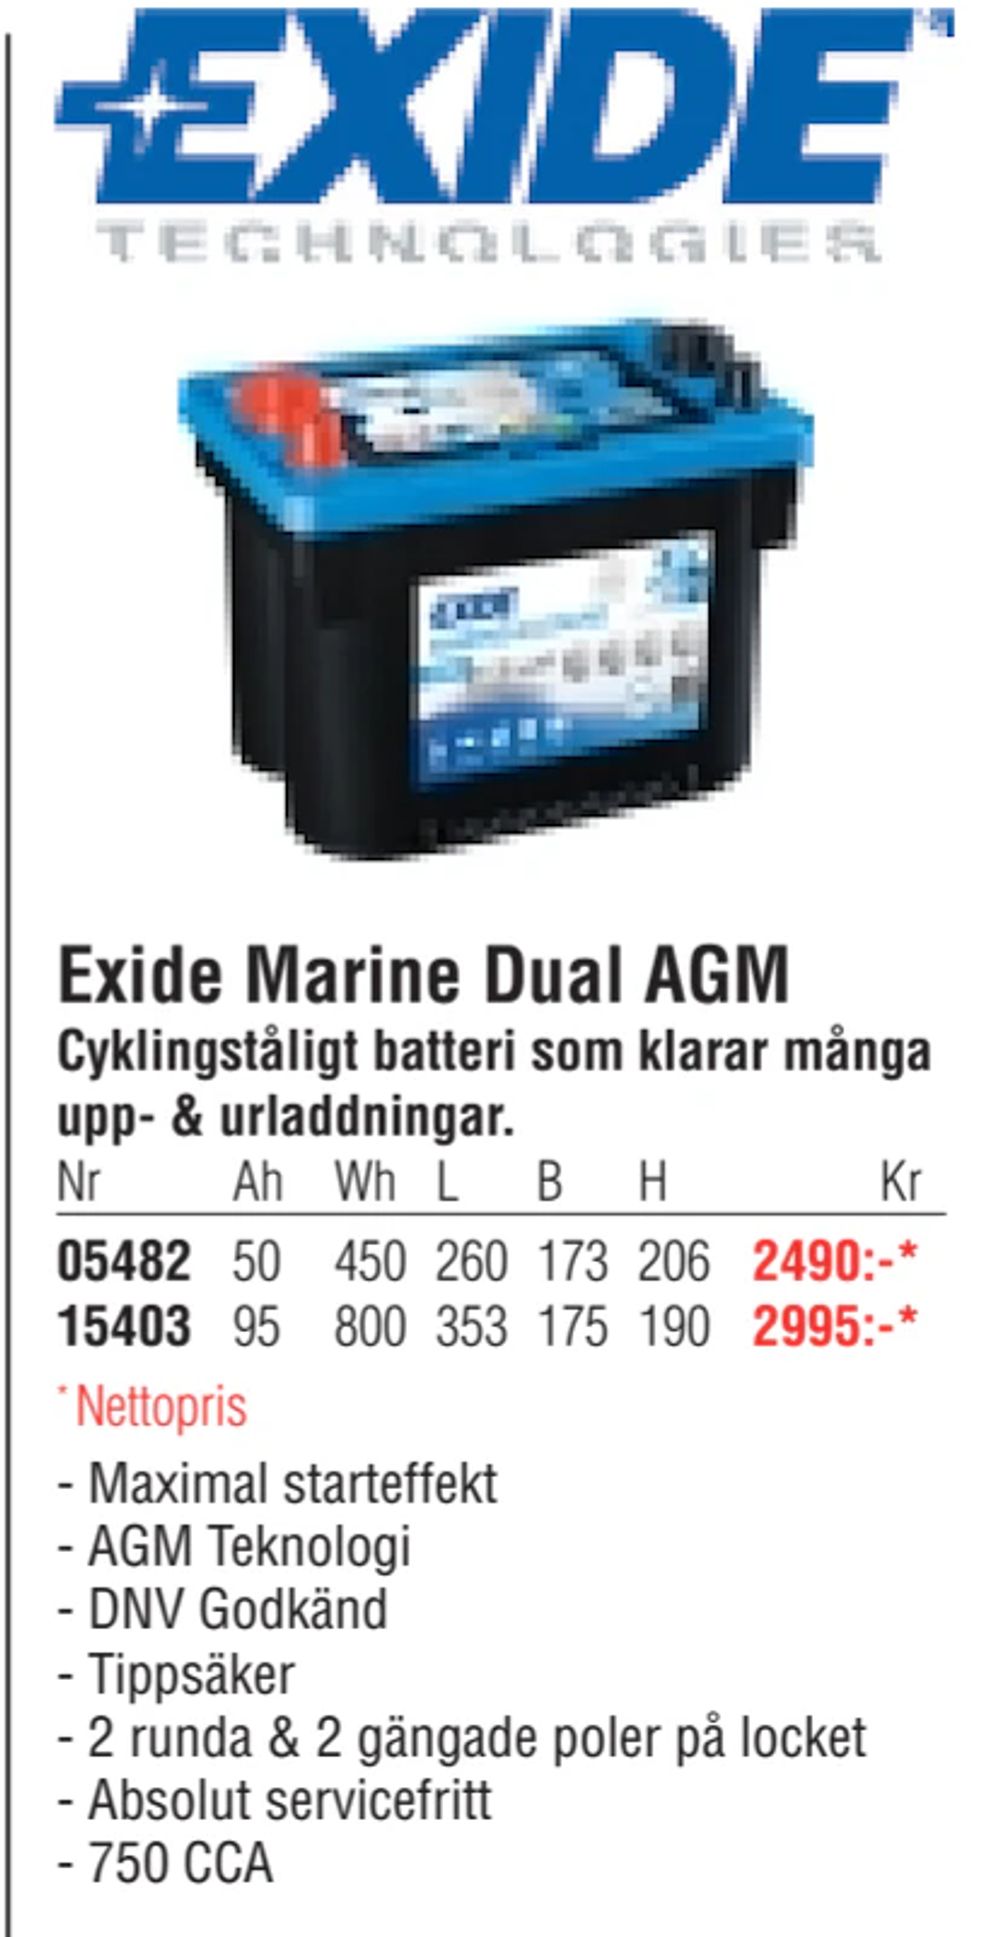 Erbjudanden på Exide Marine Dual AGM från Erlandsons Brygga för 2 490 kr